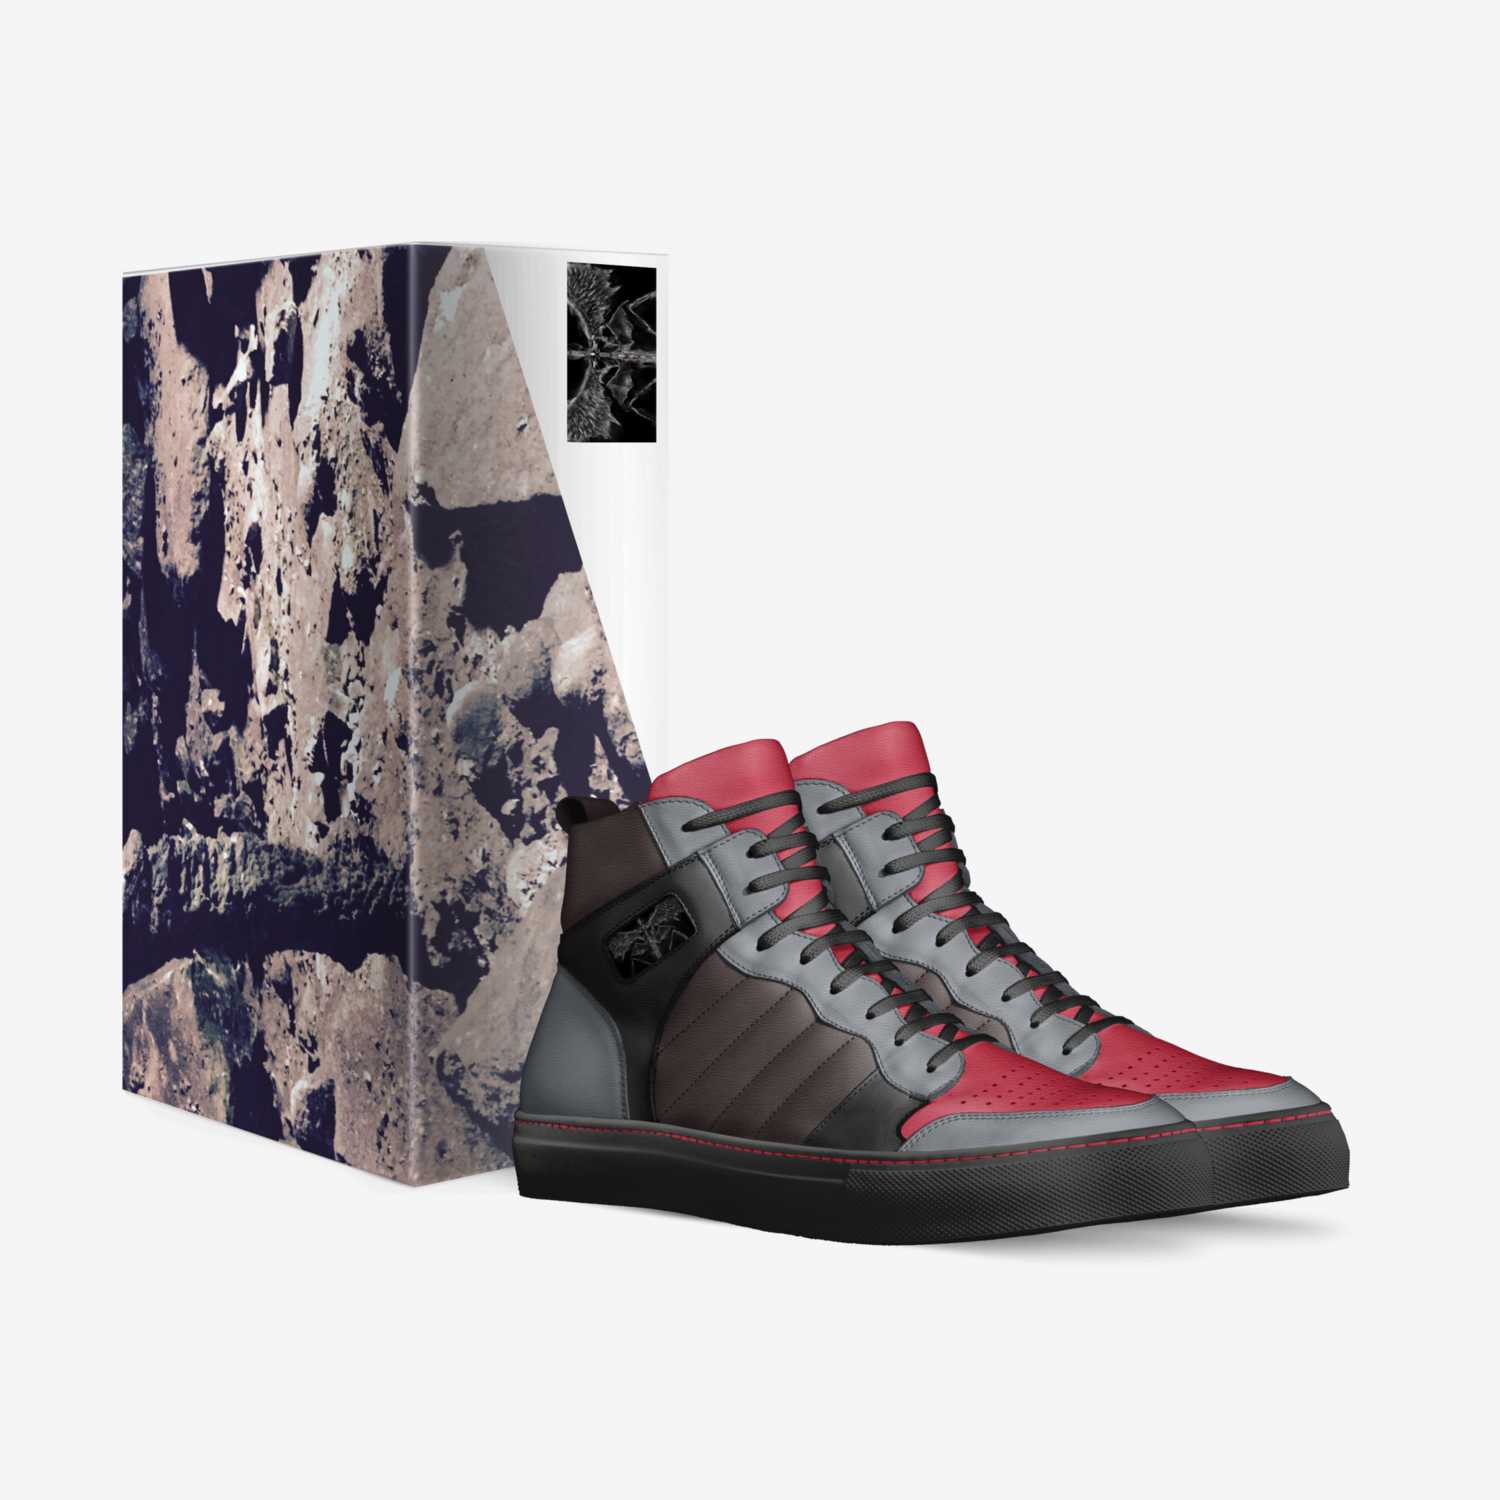 LookTowardTheMoon custom made in Italy shoes by Malkav | Box view